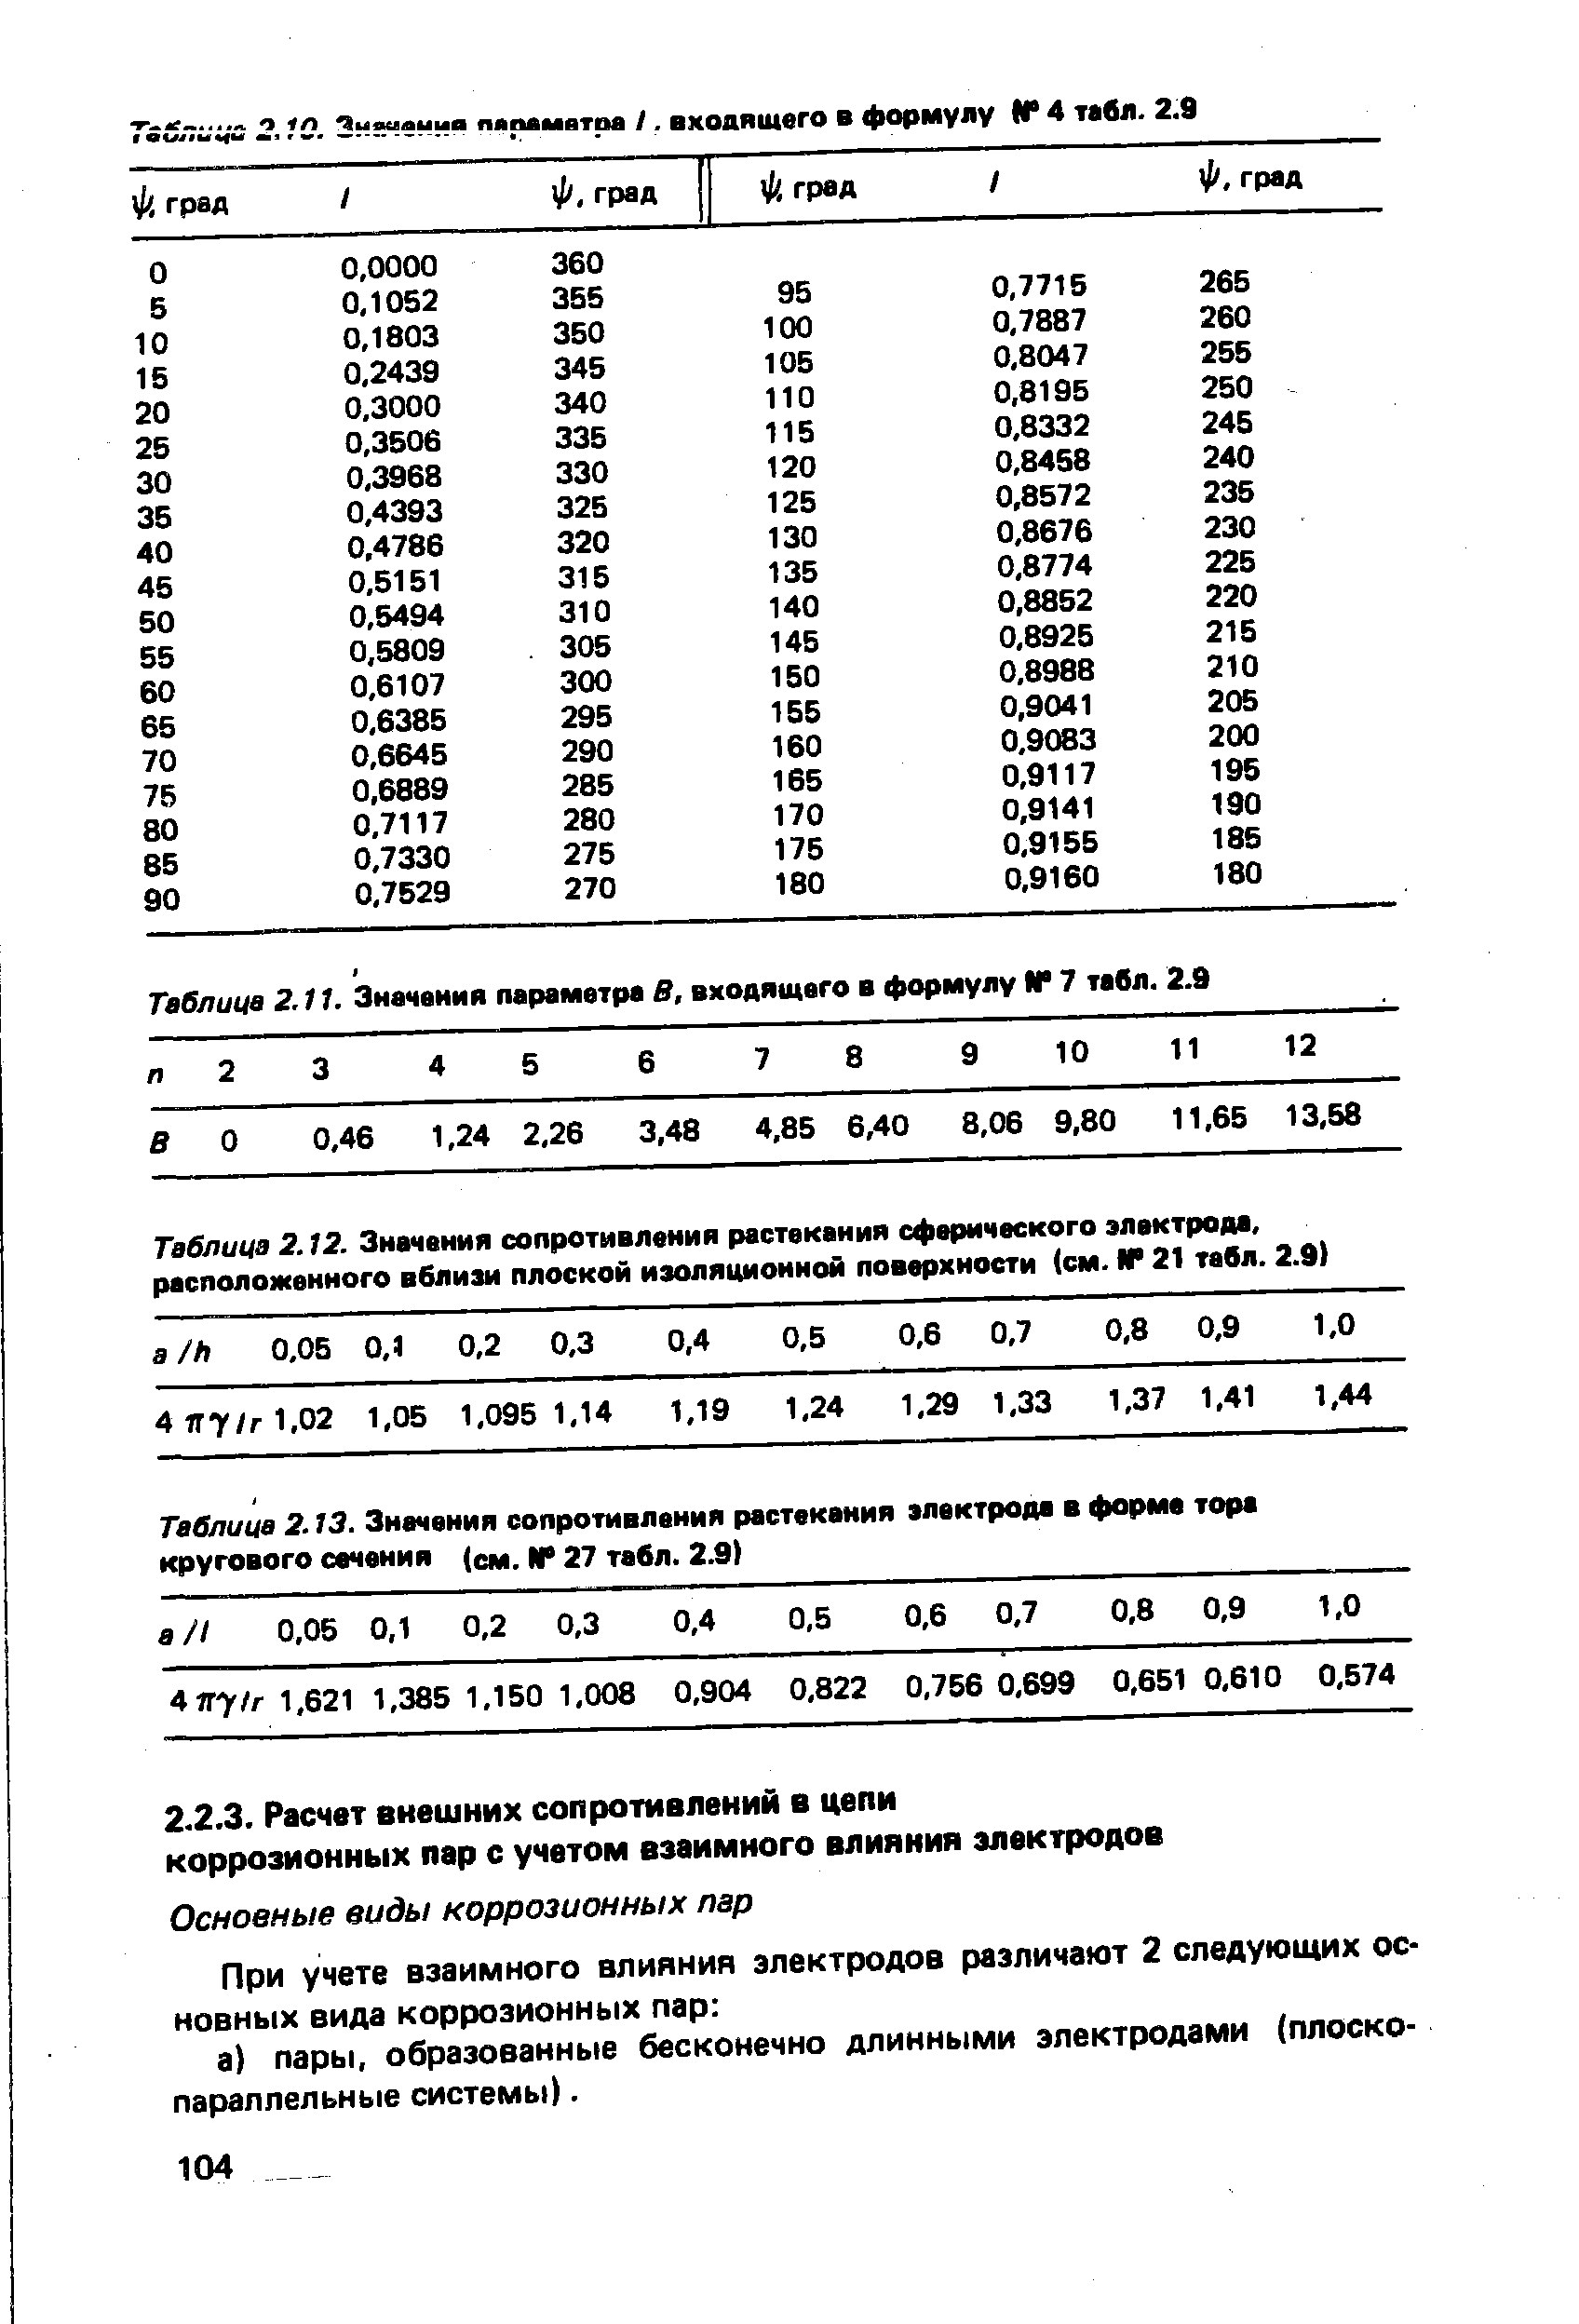 Таблица 2.13. Значения <a href="/info/39787">сопротивления растекания</a> электрода в форма тора кругового сачения (см. N 27 табл. 2.9) 
